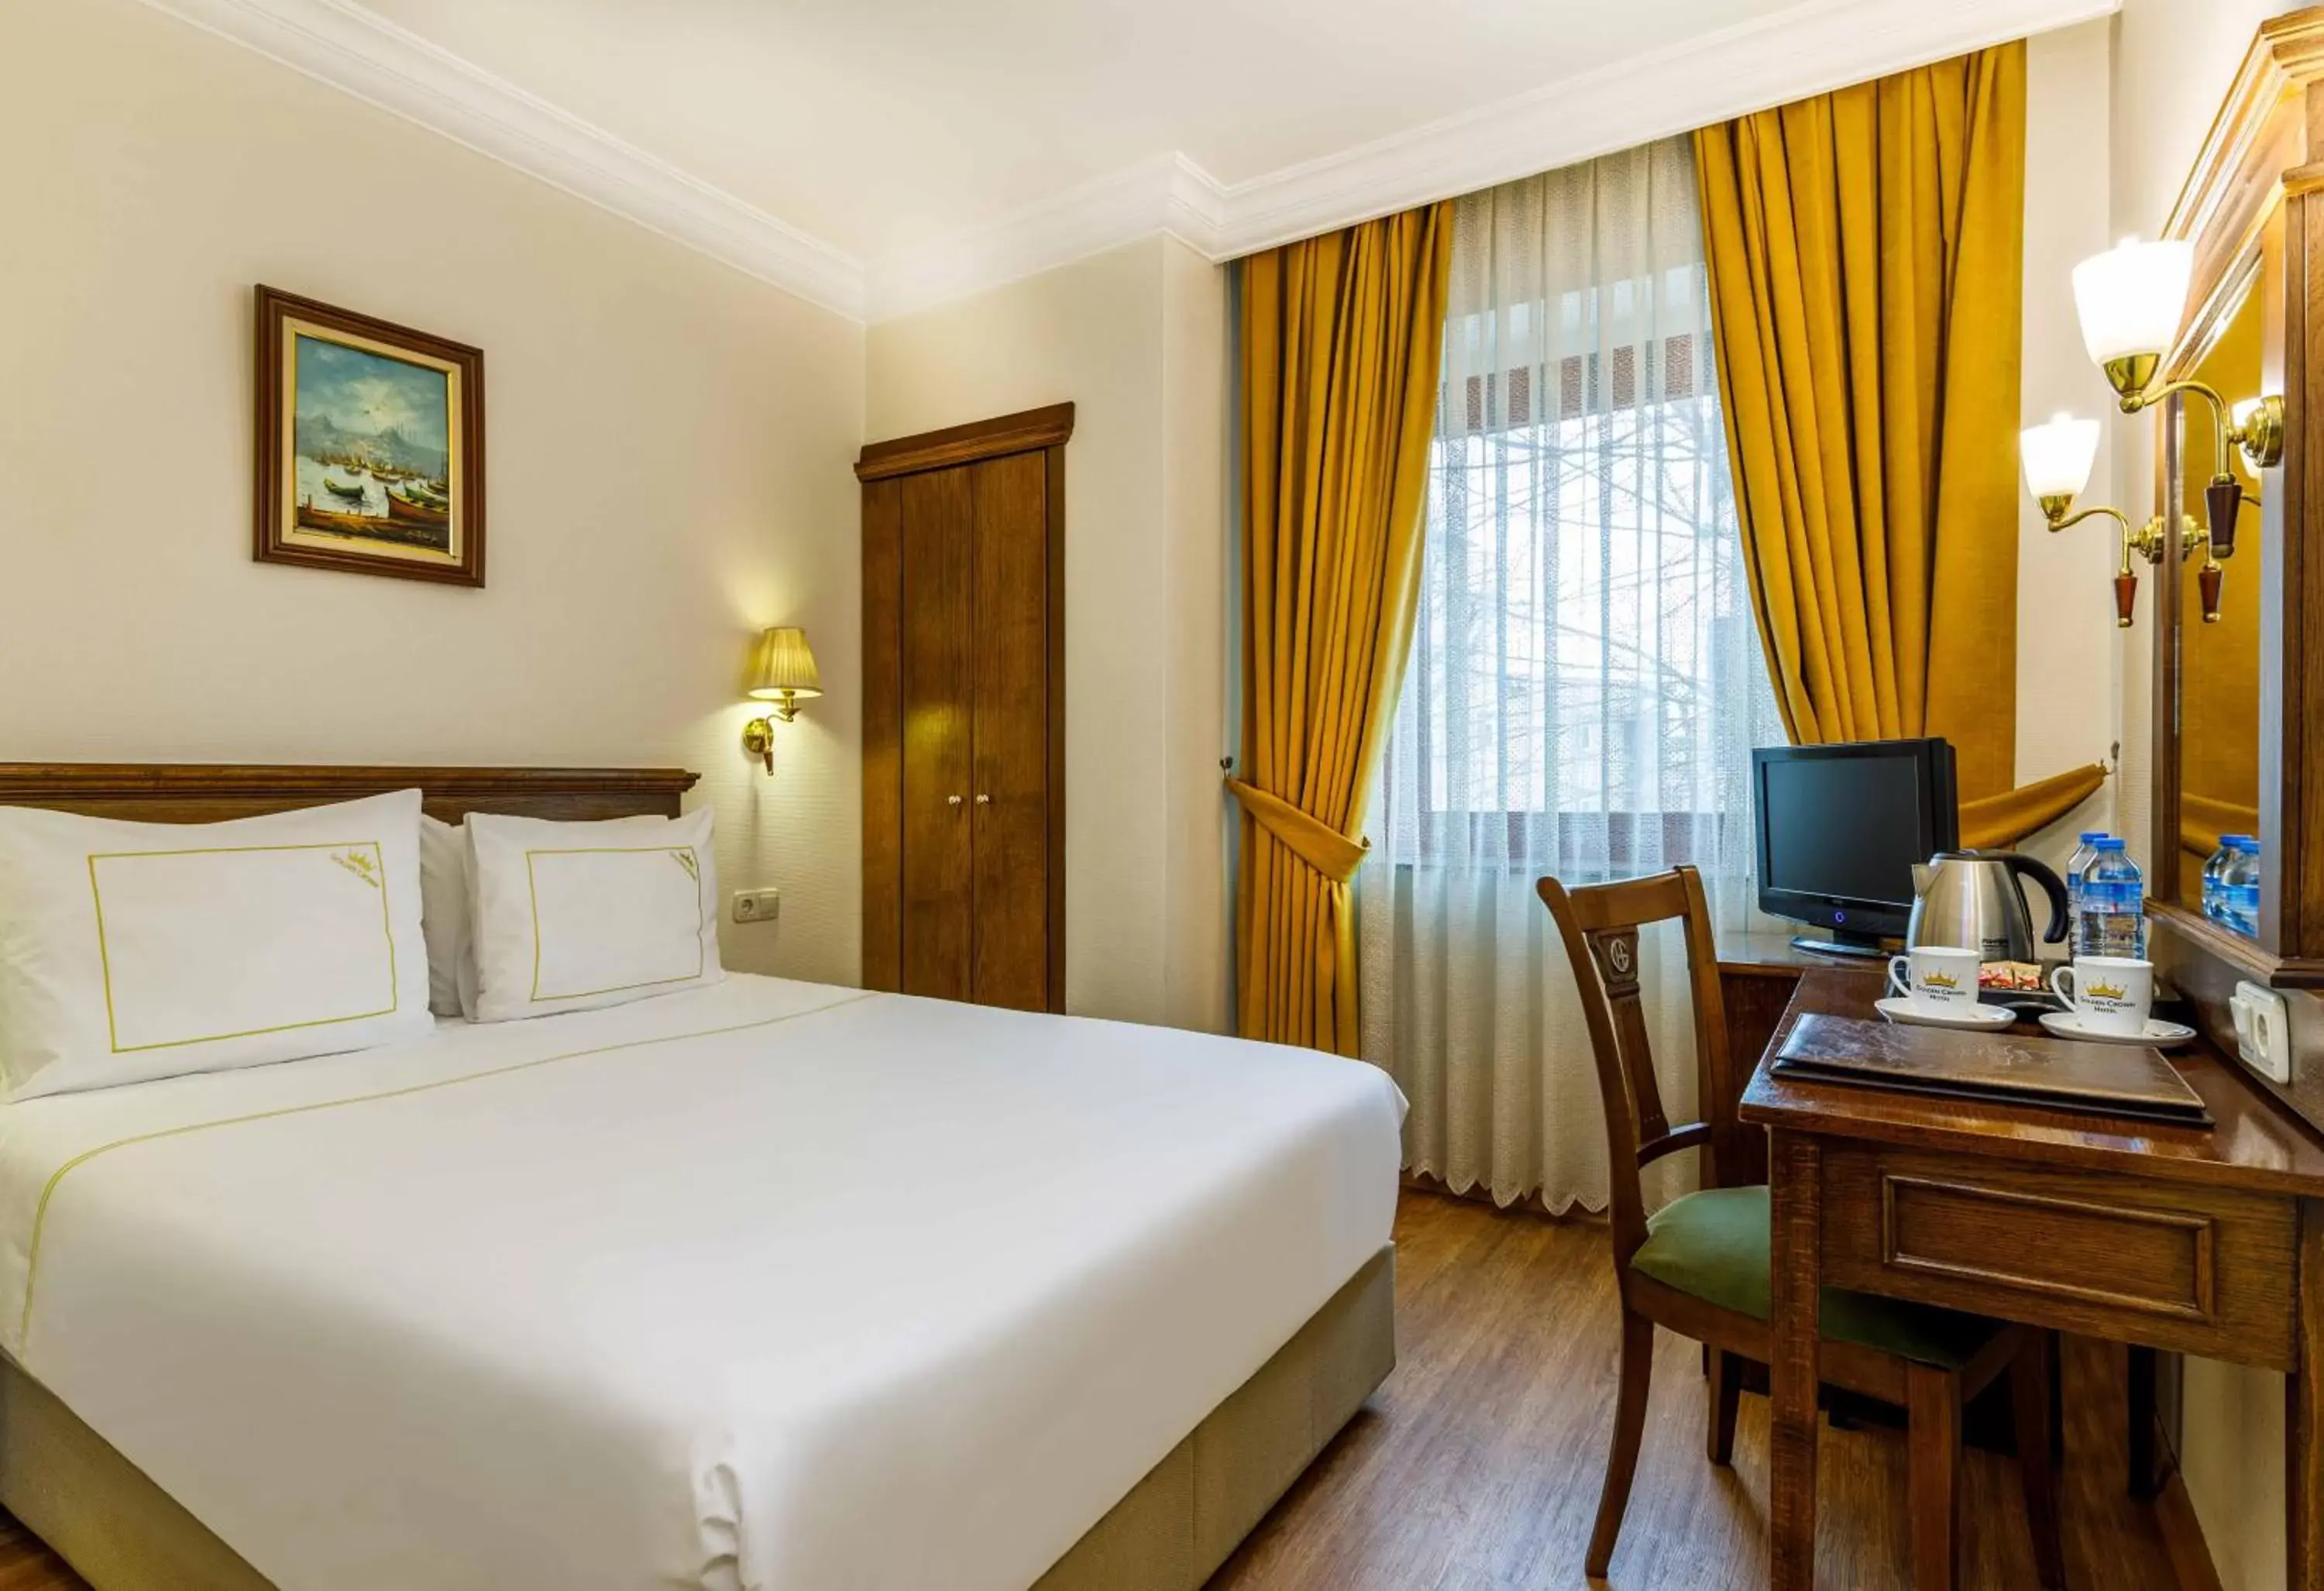 Bedroom, Bed in Golden Crown Hotel